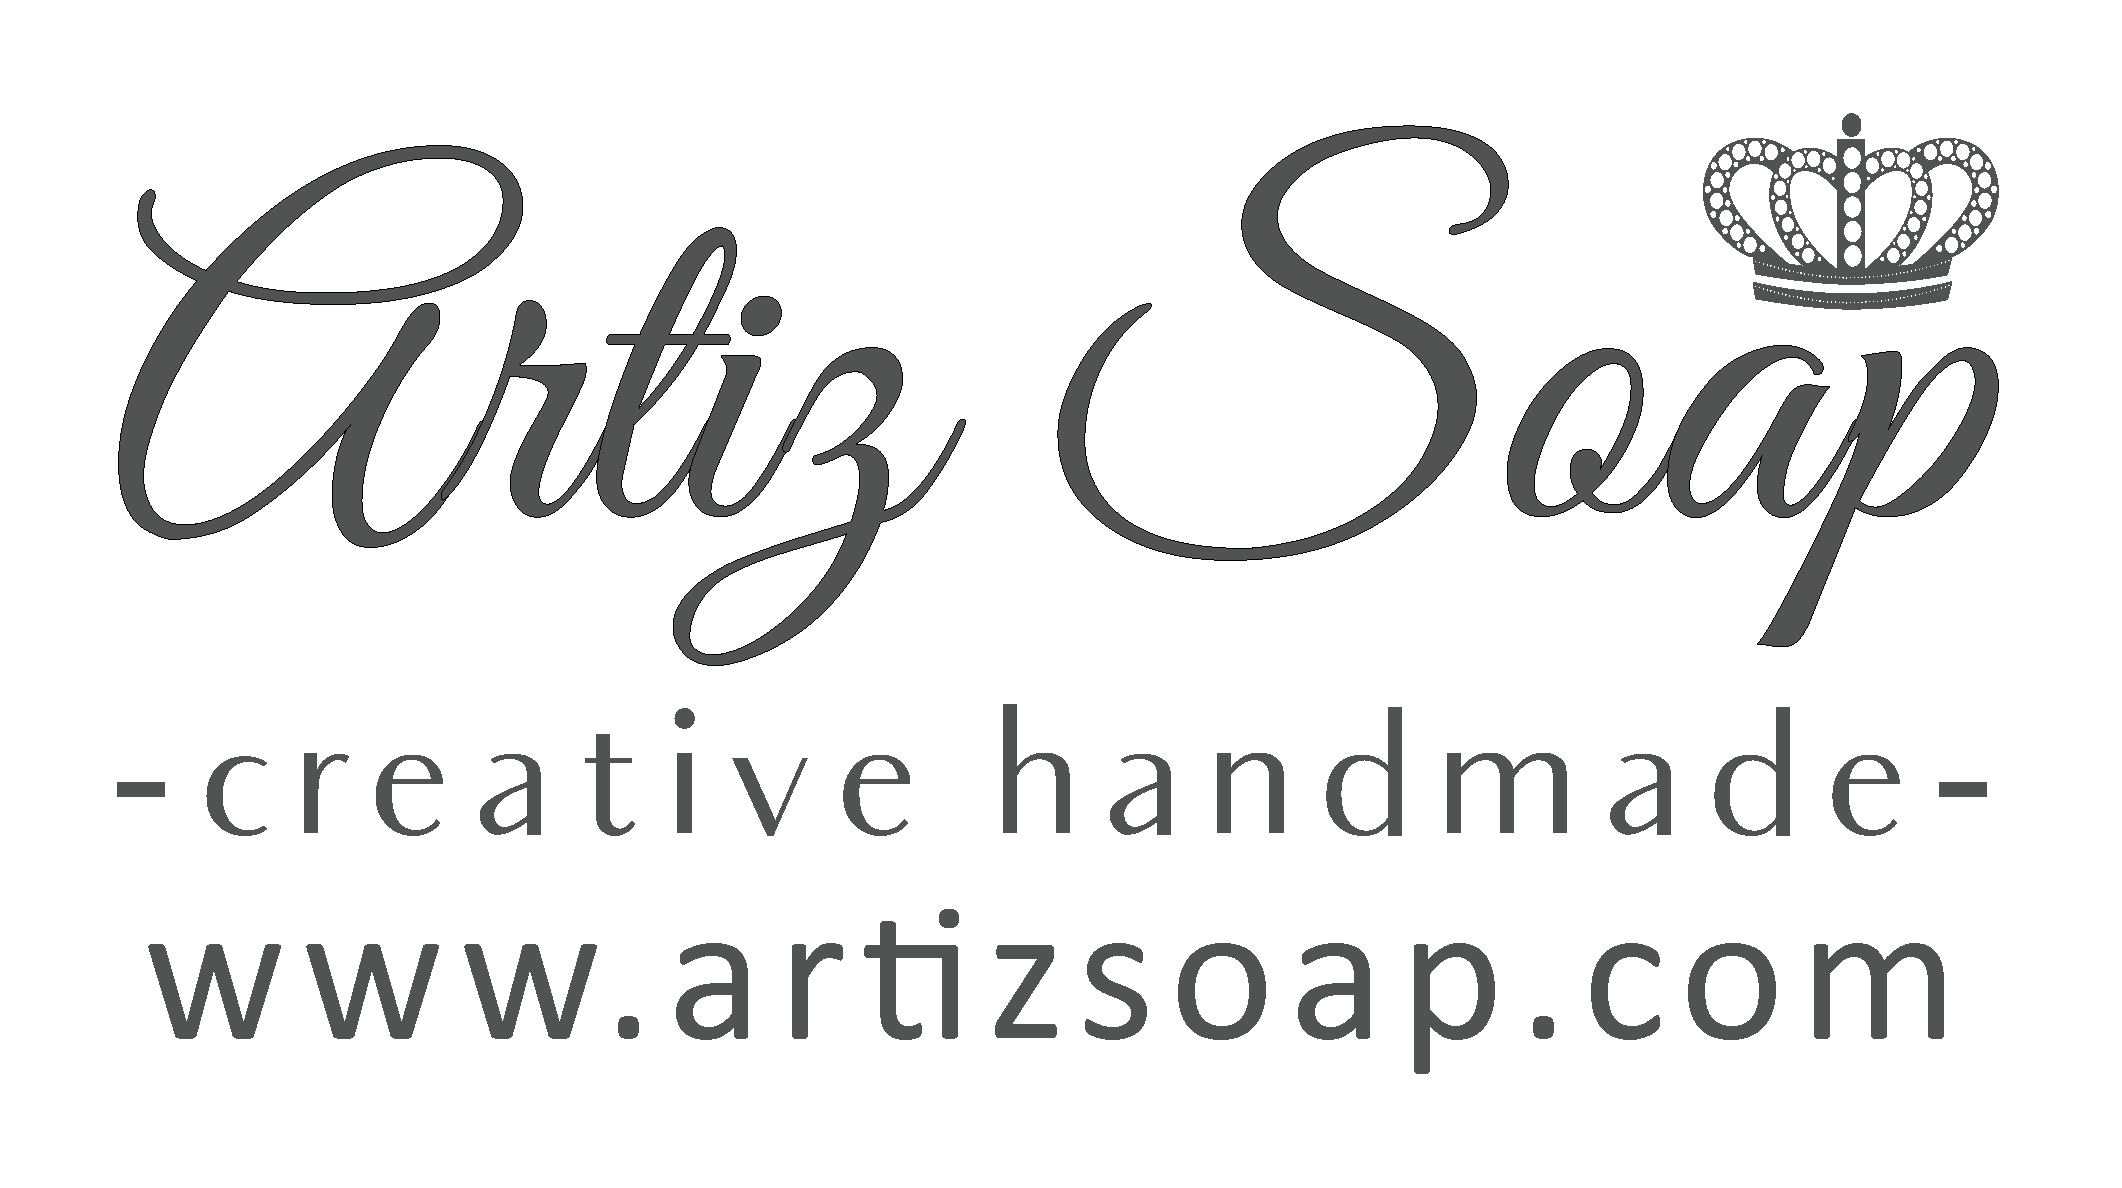 Artiz Soap